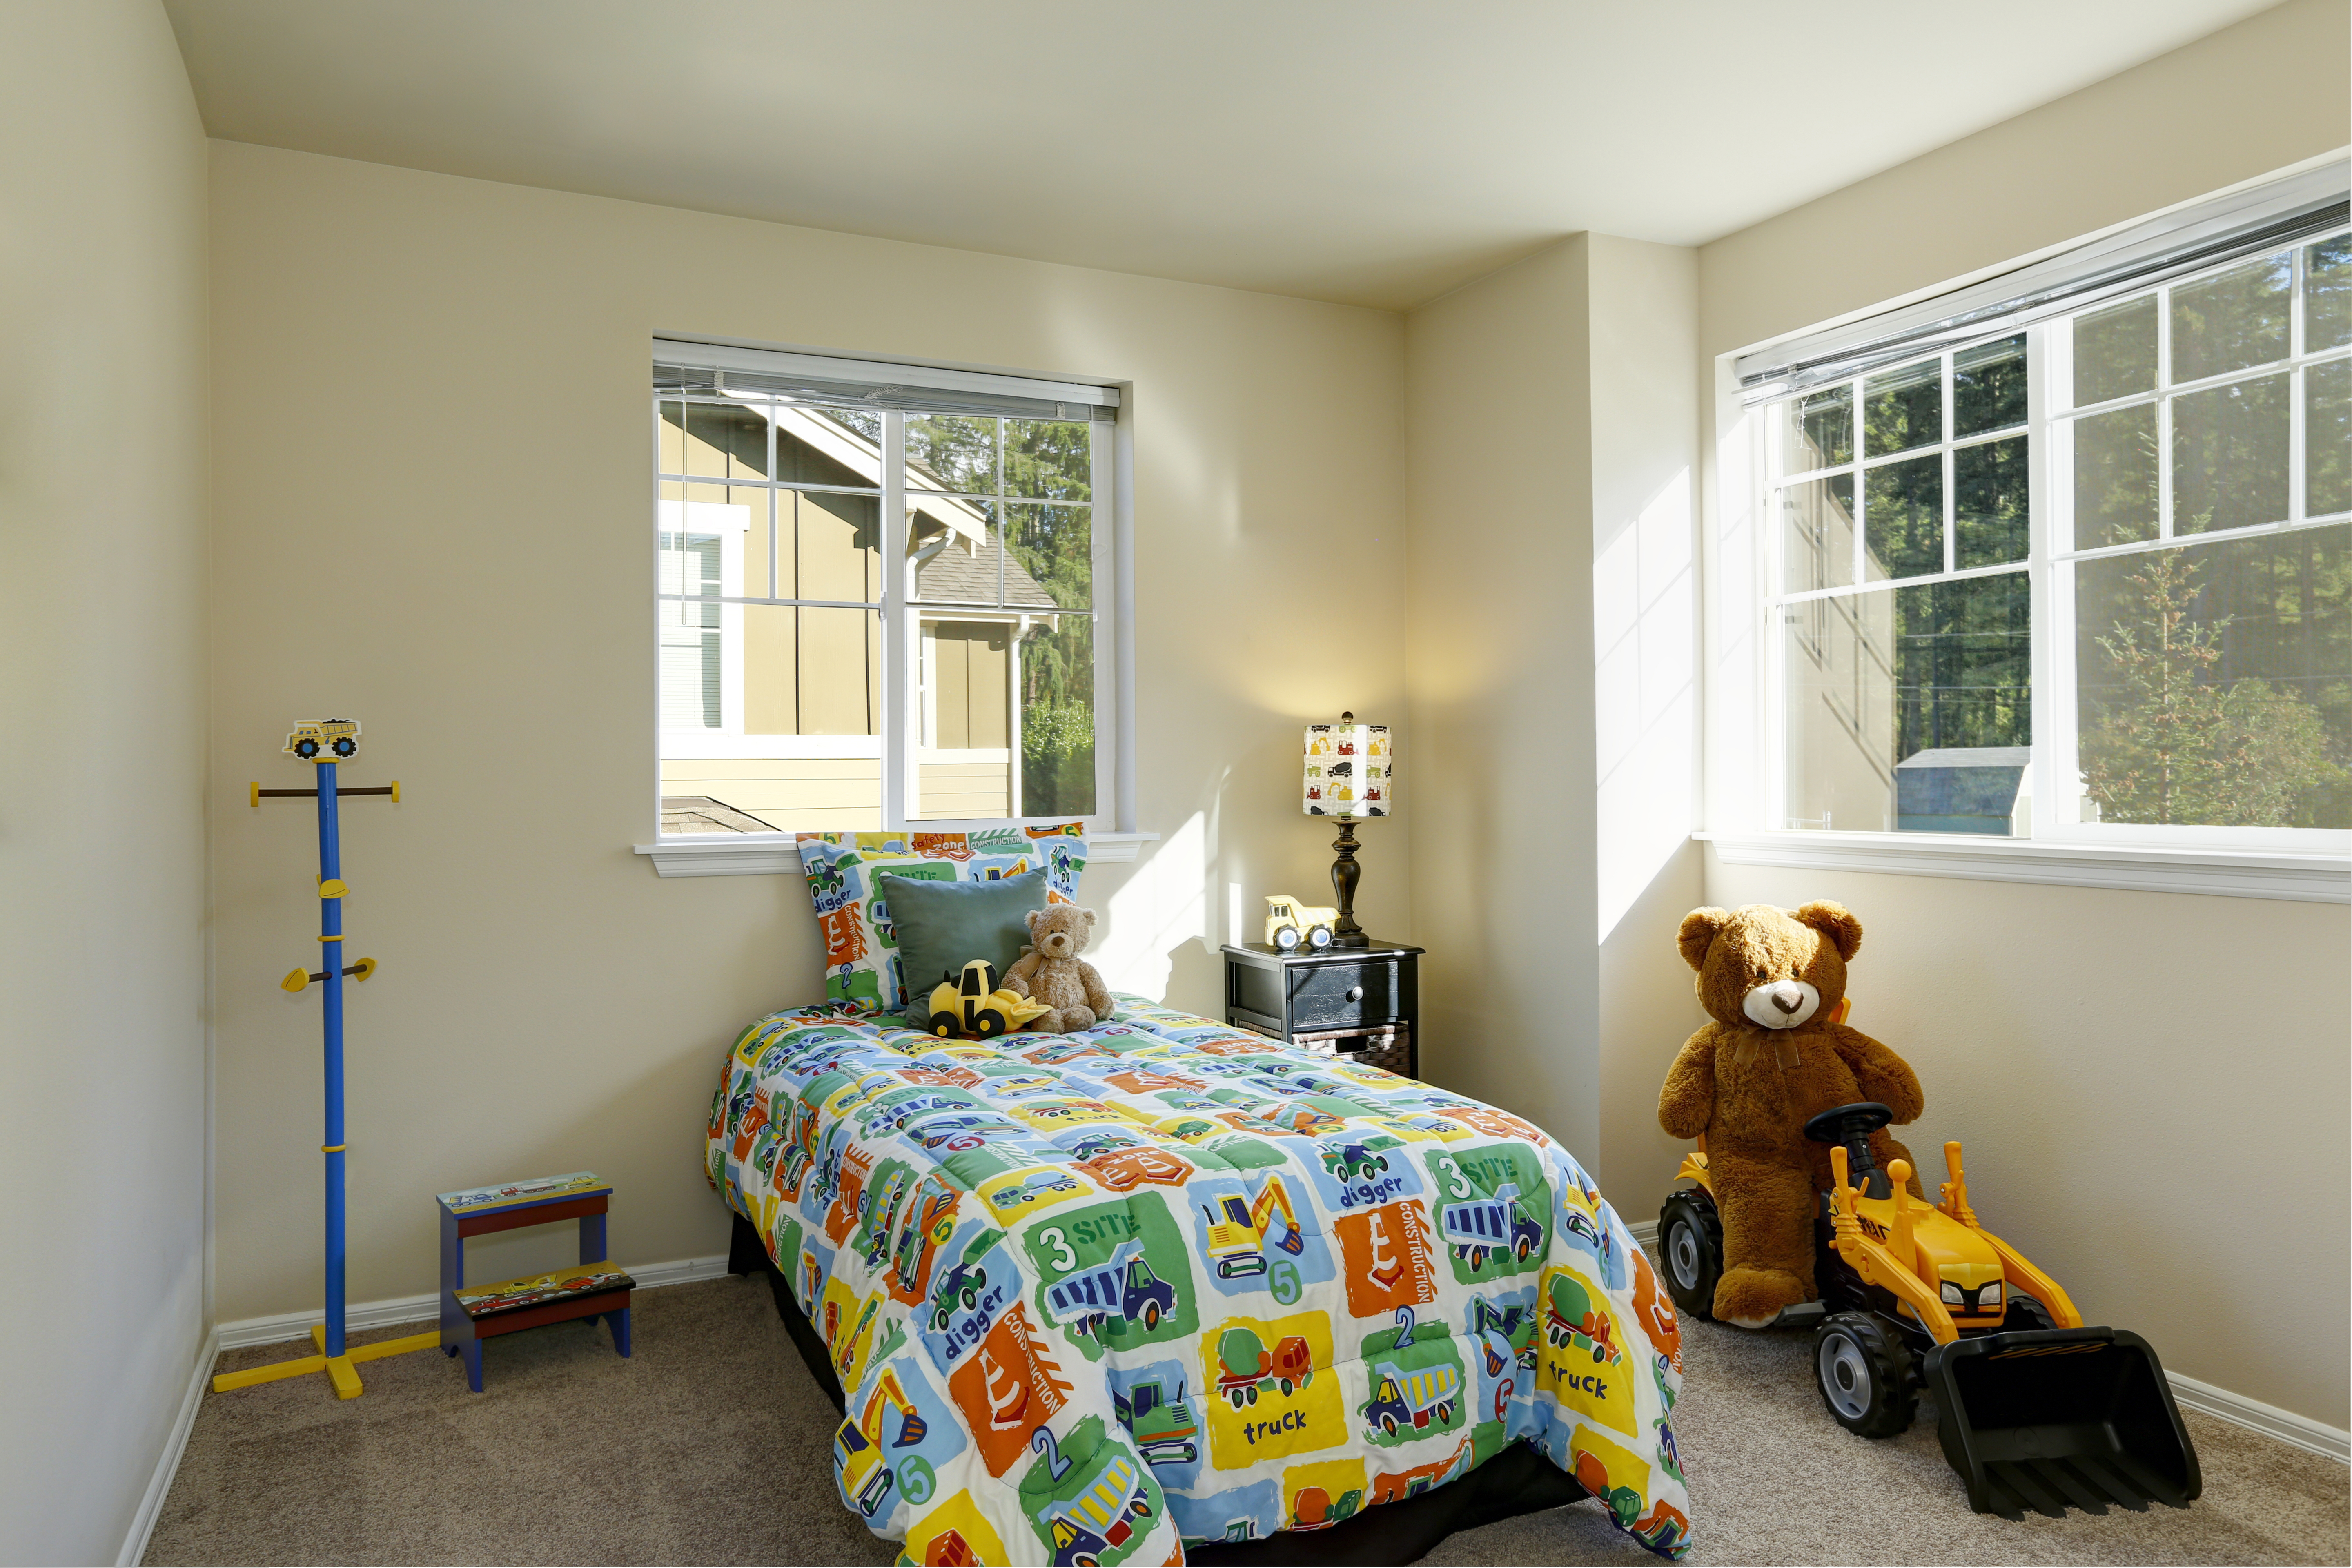 Une chambre d'enfant propre | Source : Shutterstock